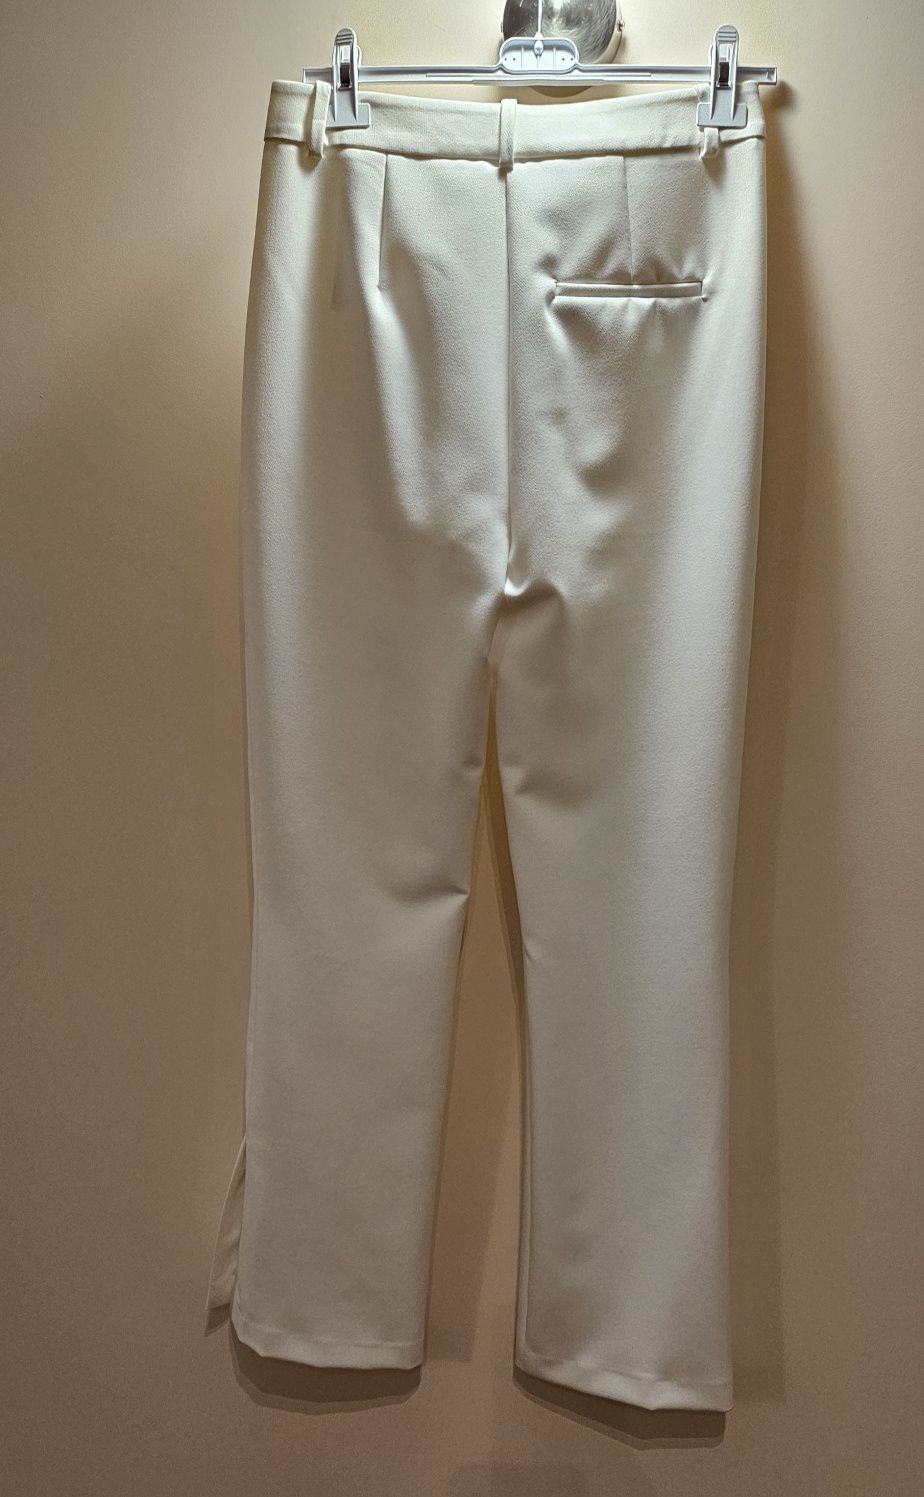 Spodnie białe Zara 38 nowe